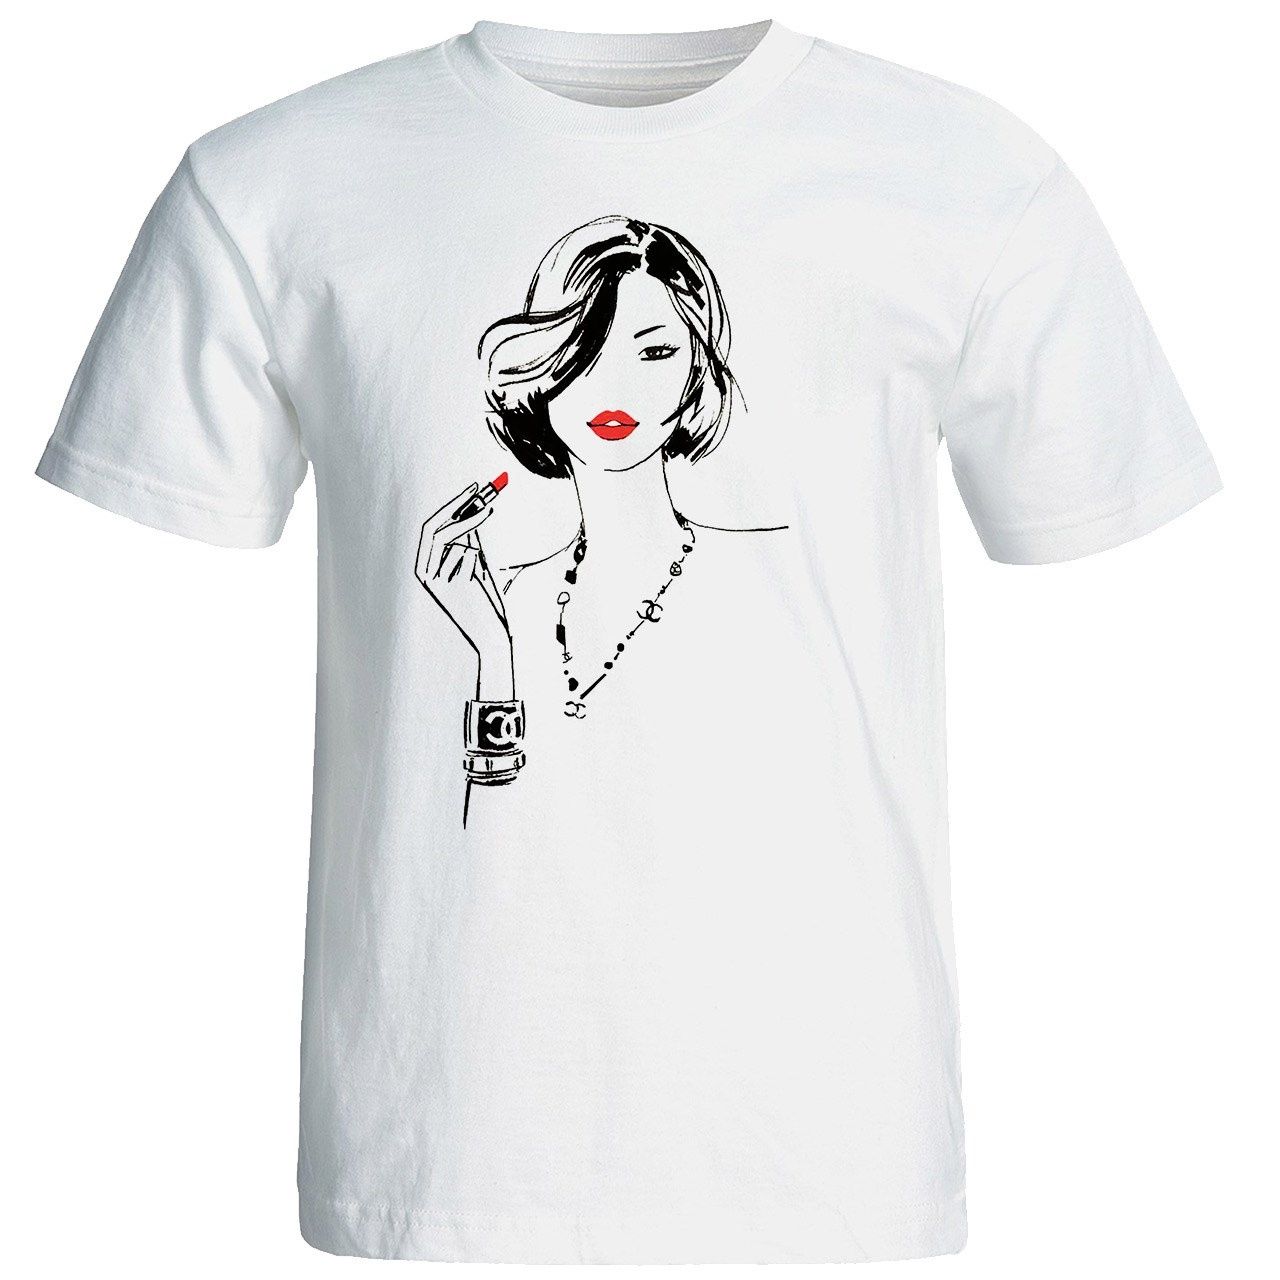 تی شرت آستین کوتاه زنانه شین دیزاین طرح فانتزی کد 4524 -  - 1